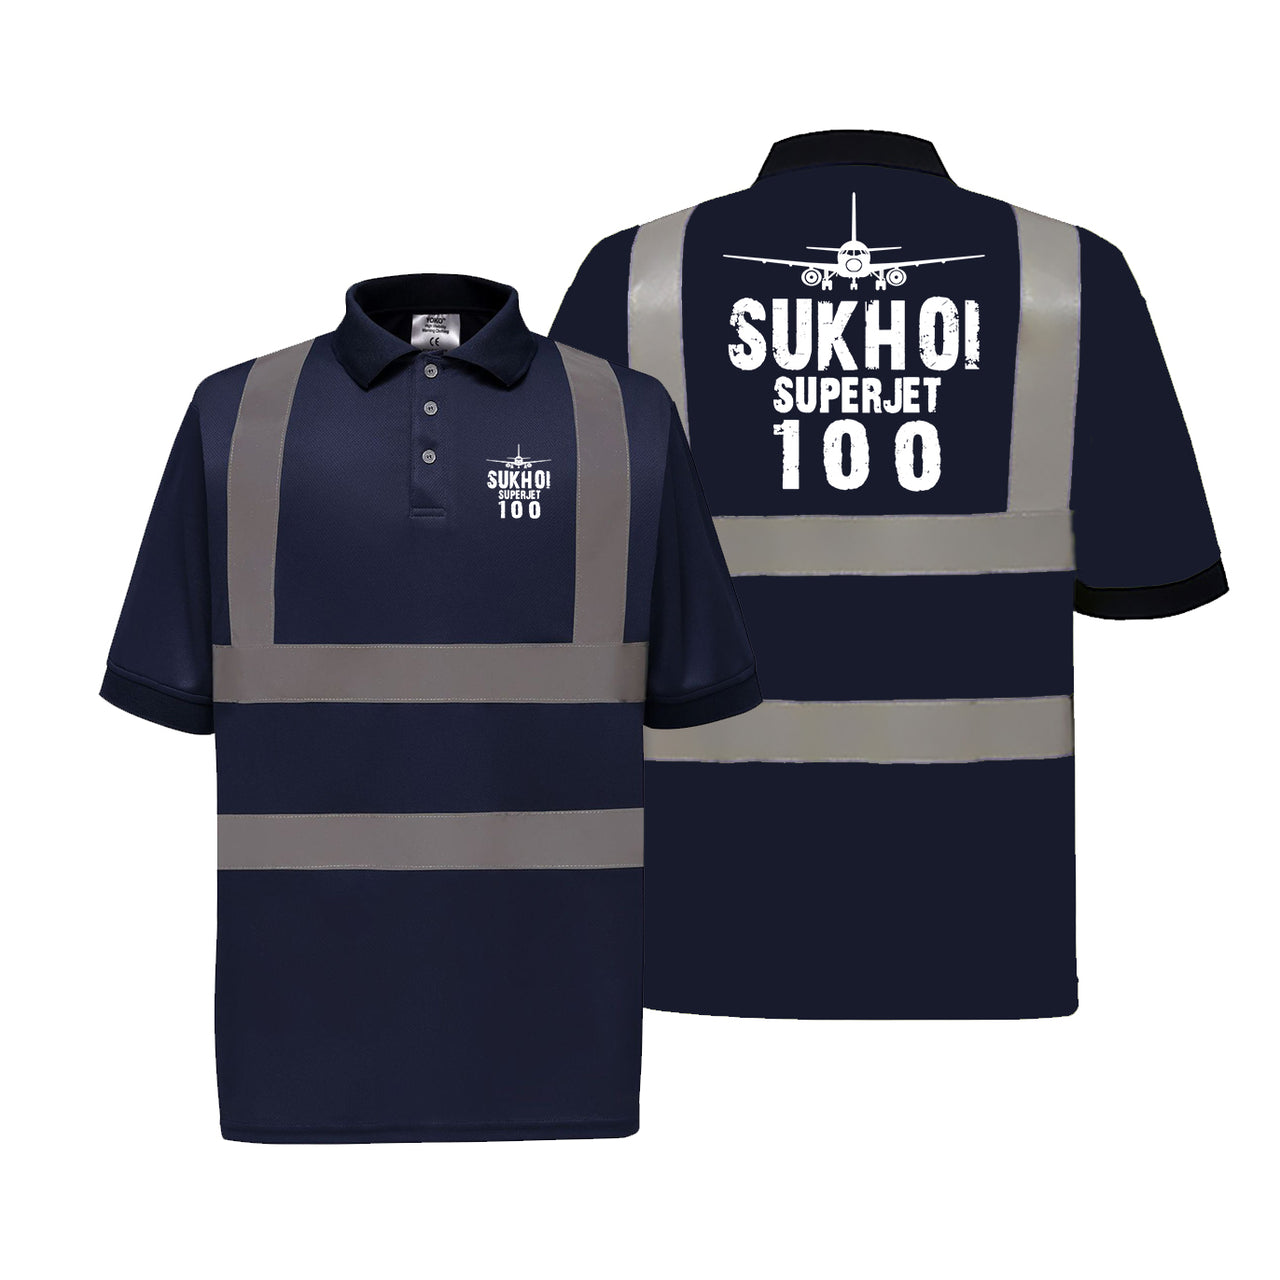 Sukhoi Superjet 100 & Plane Designed Reflective Polo T-Shirts